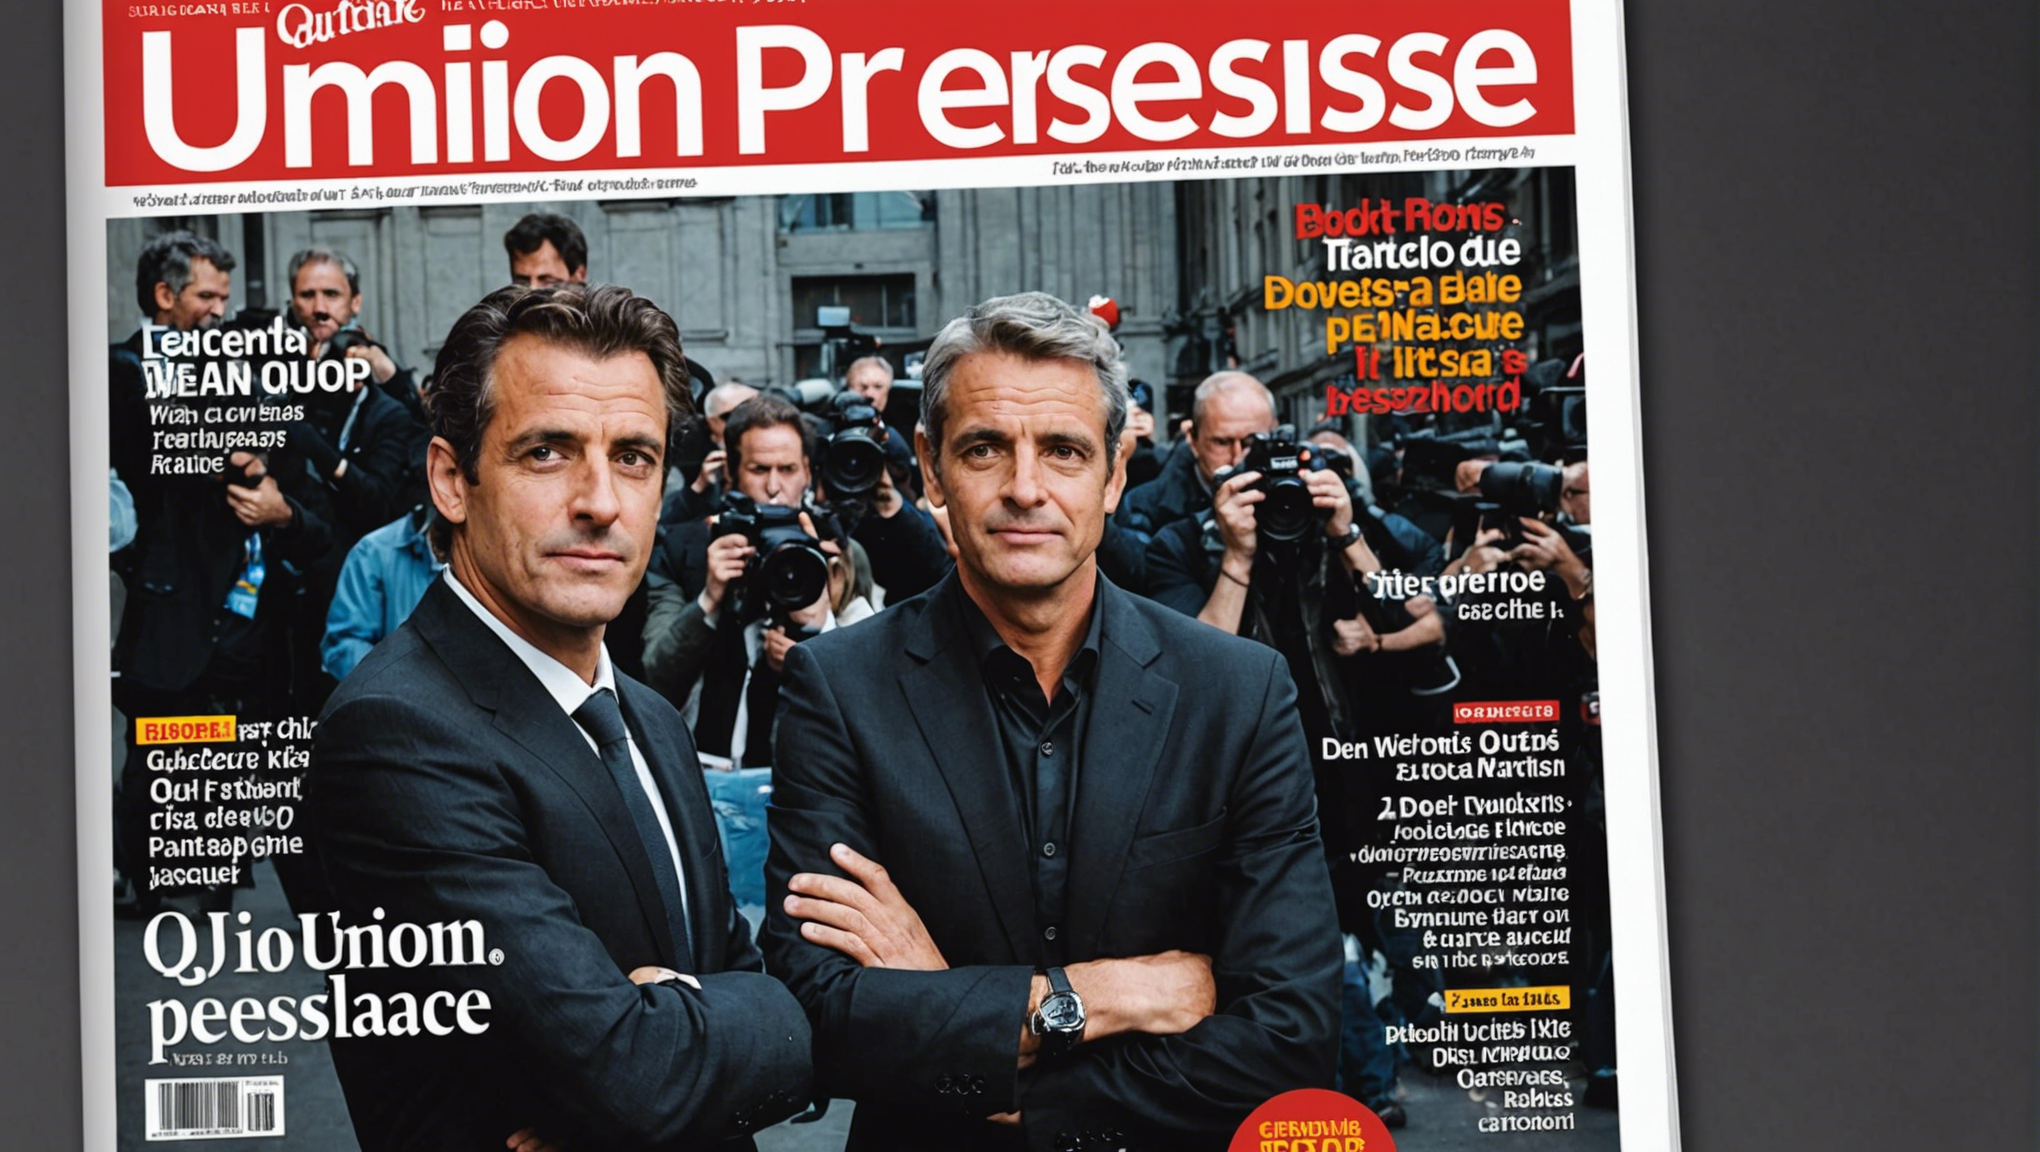 découvrez tout ce qu'il faut savoir sur l'union presse magazine, son histoire, ses publications et son rôle dans le paysage médiatique français.